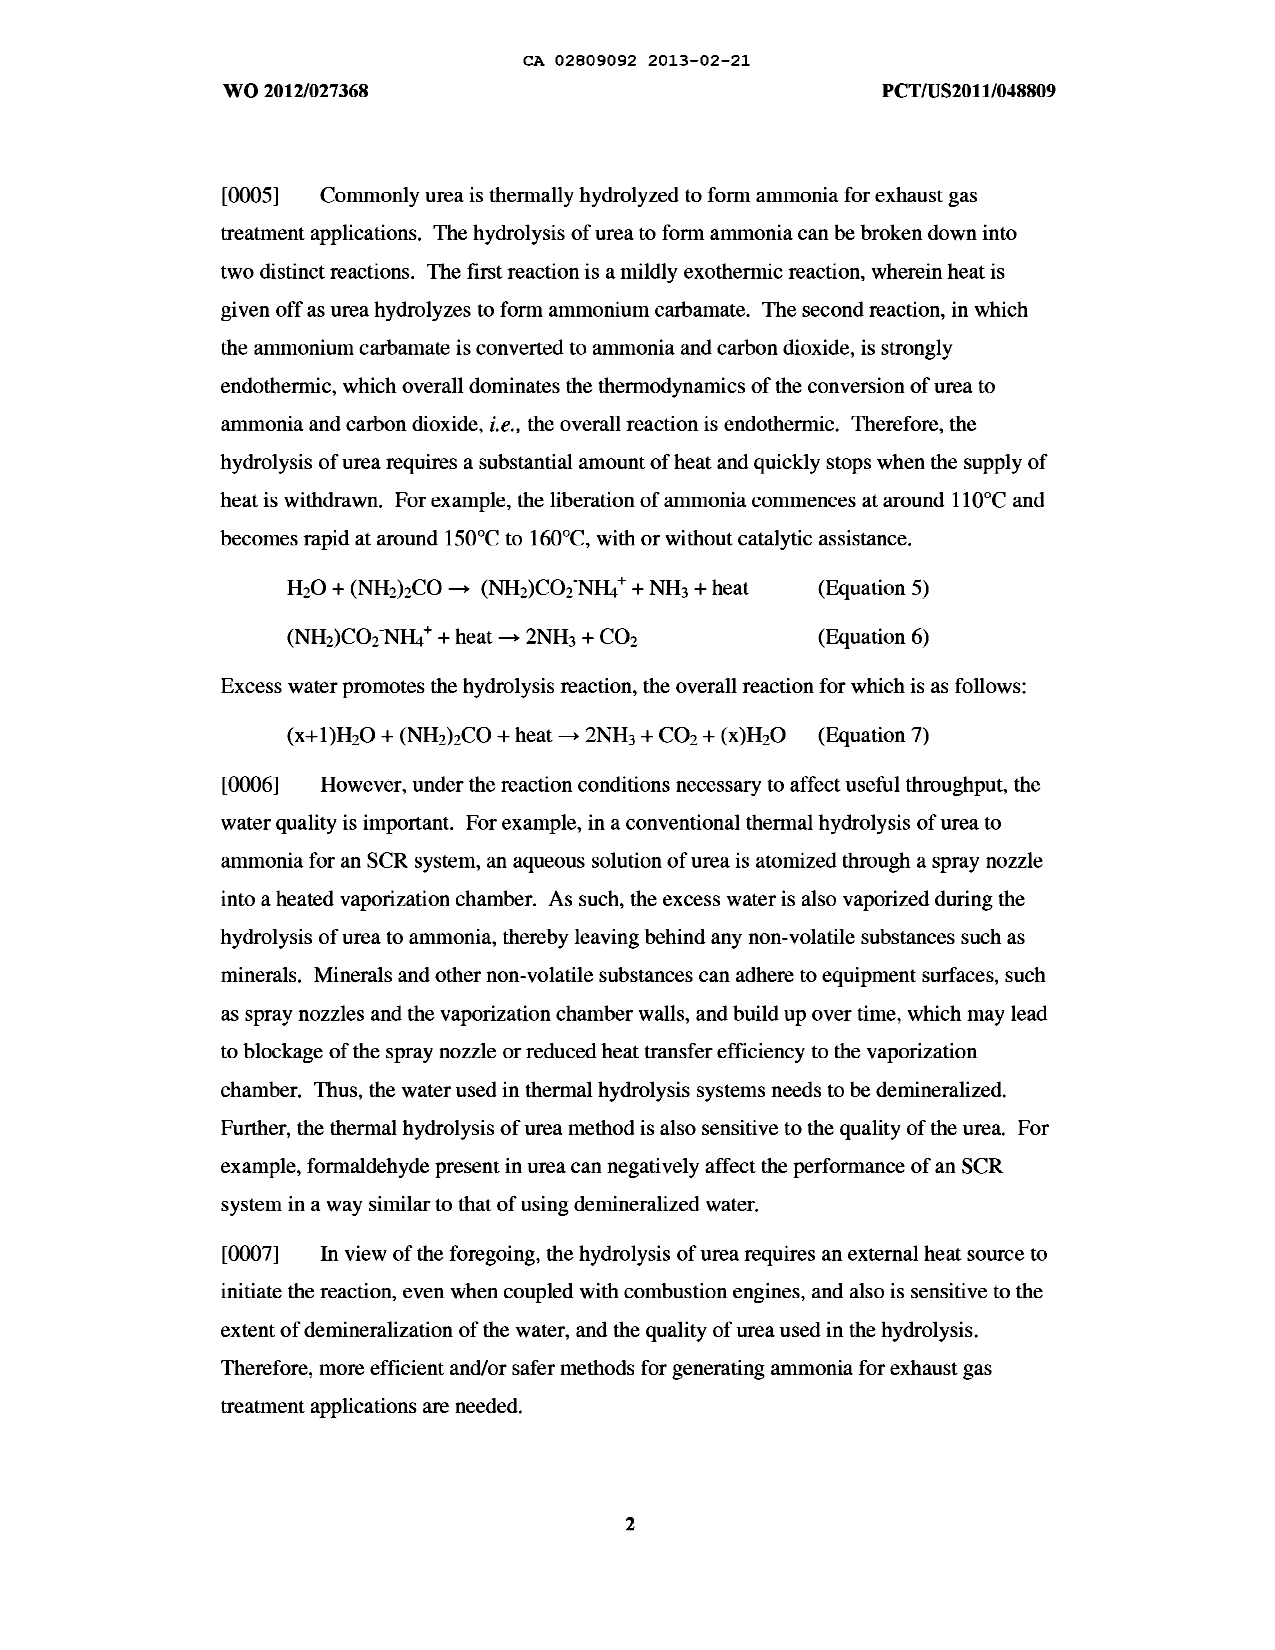 Canadian Patent Document 2809092. Description 20180221. Image 2 of 22